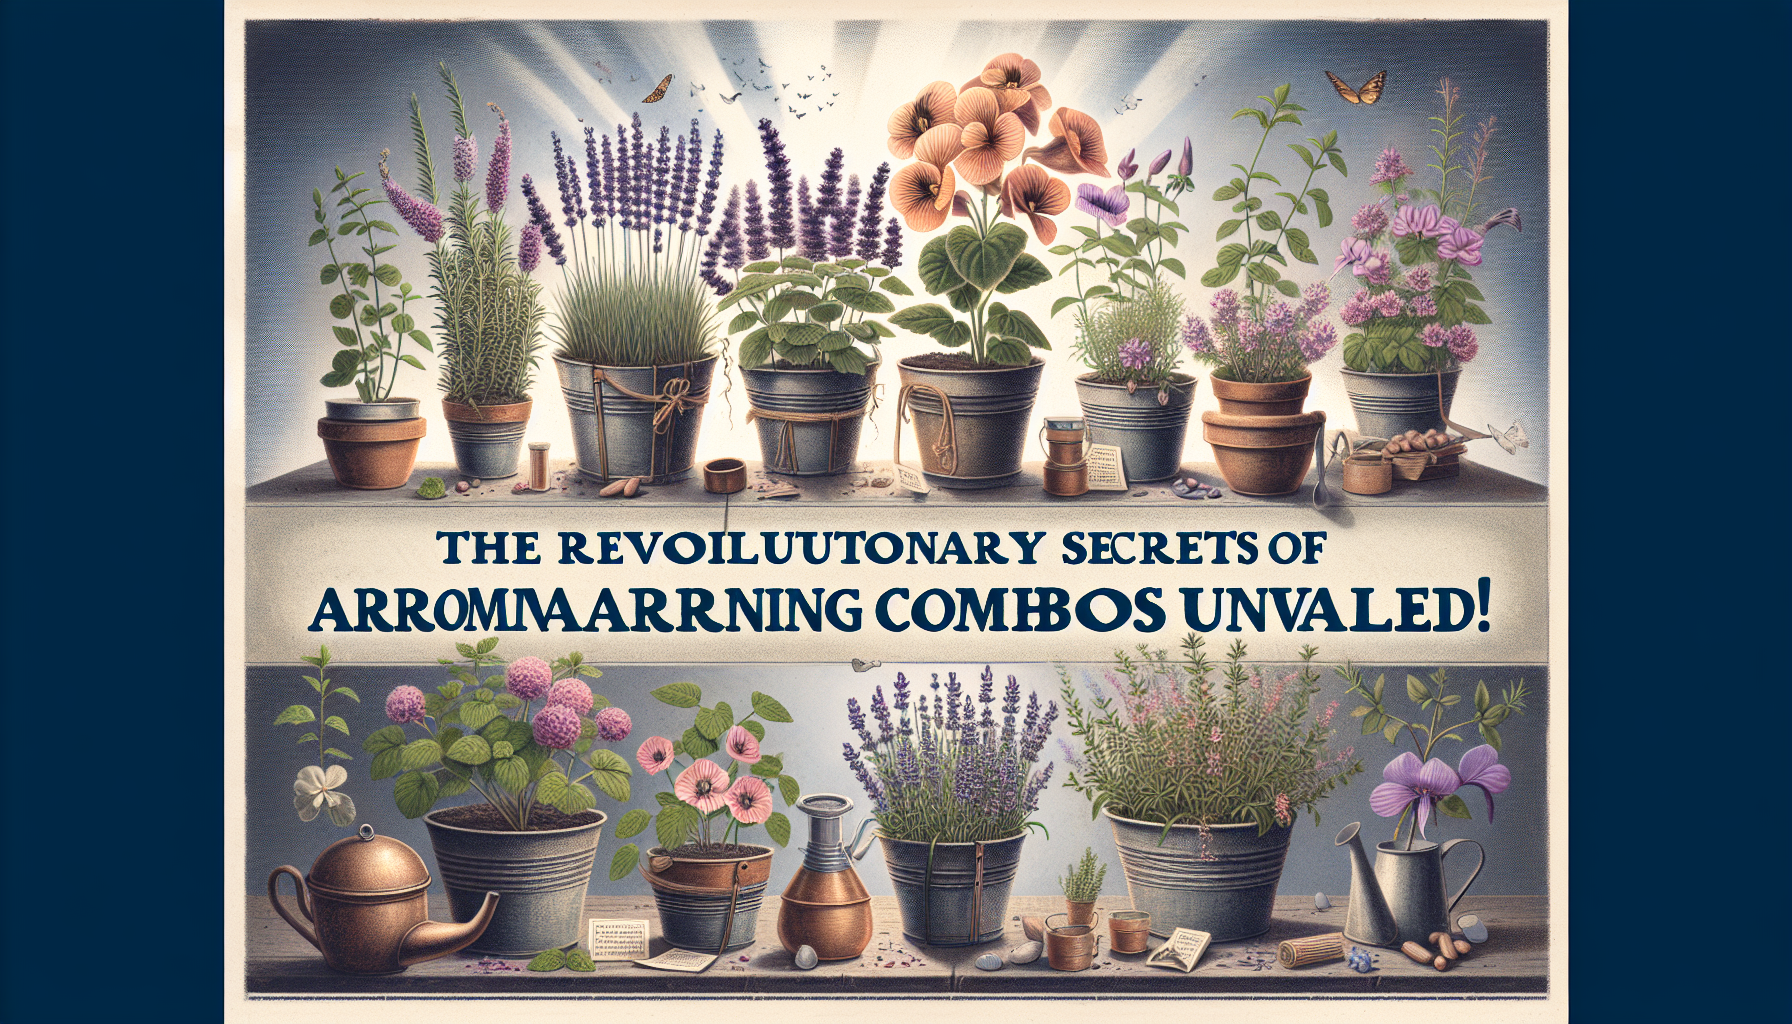 découvrez les mariages d'aromates révolutionnaires pour sublimer vos potées de jardinage avec les combinaisons gagnantes.